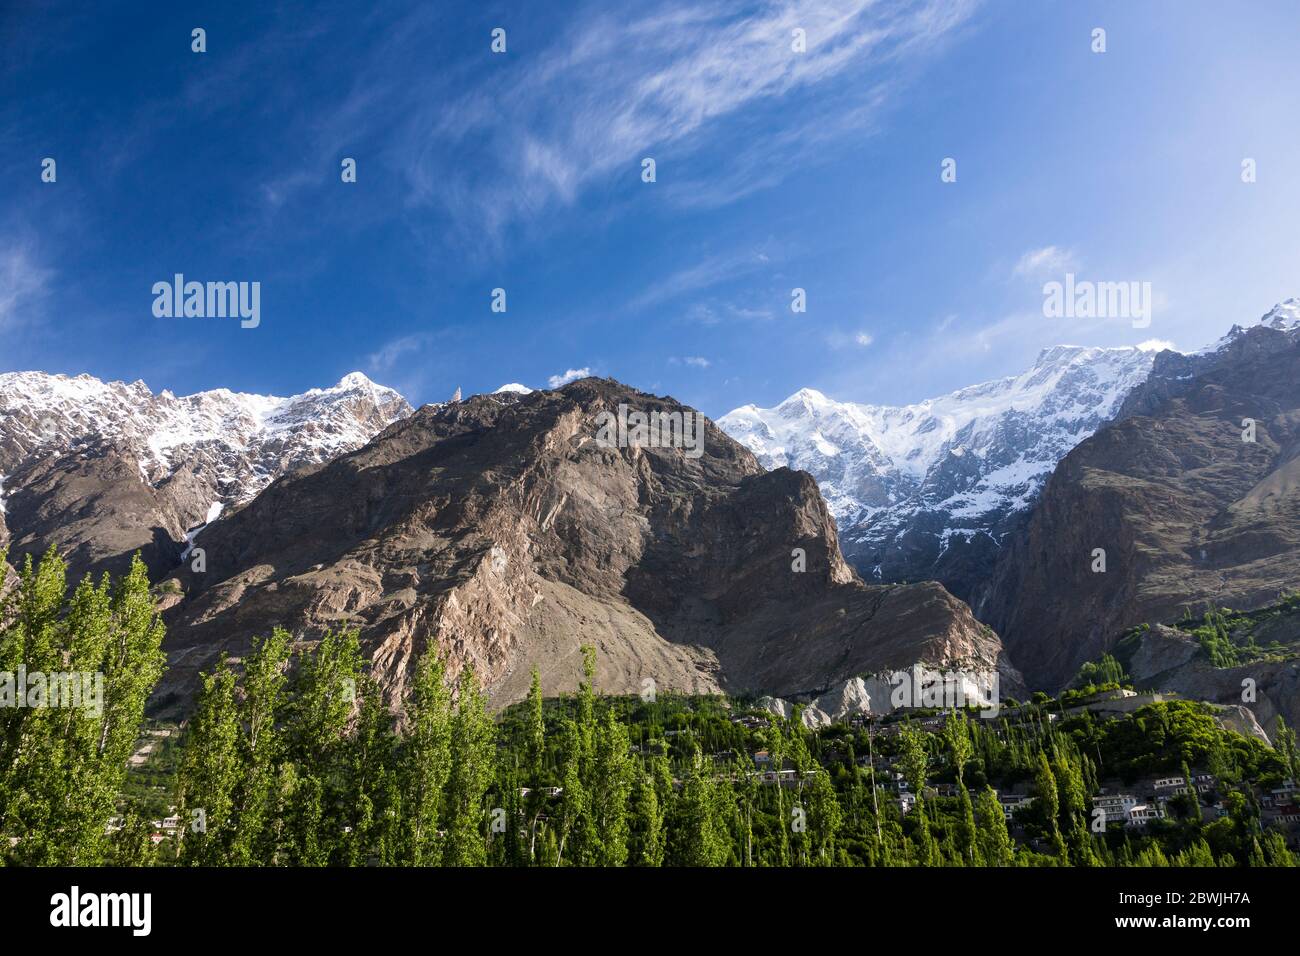 Baltit fort and Ultar Sar mountains, Hunza, Karimabad, Hunza Nagar, Gilgit-Baltistan Province, Pakistan, South Asia, Asia Stock Photo